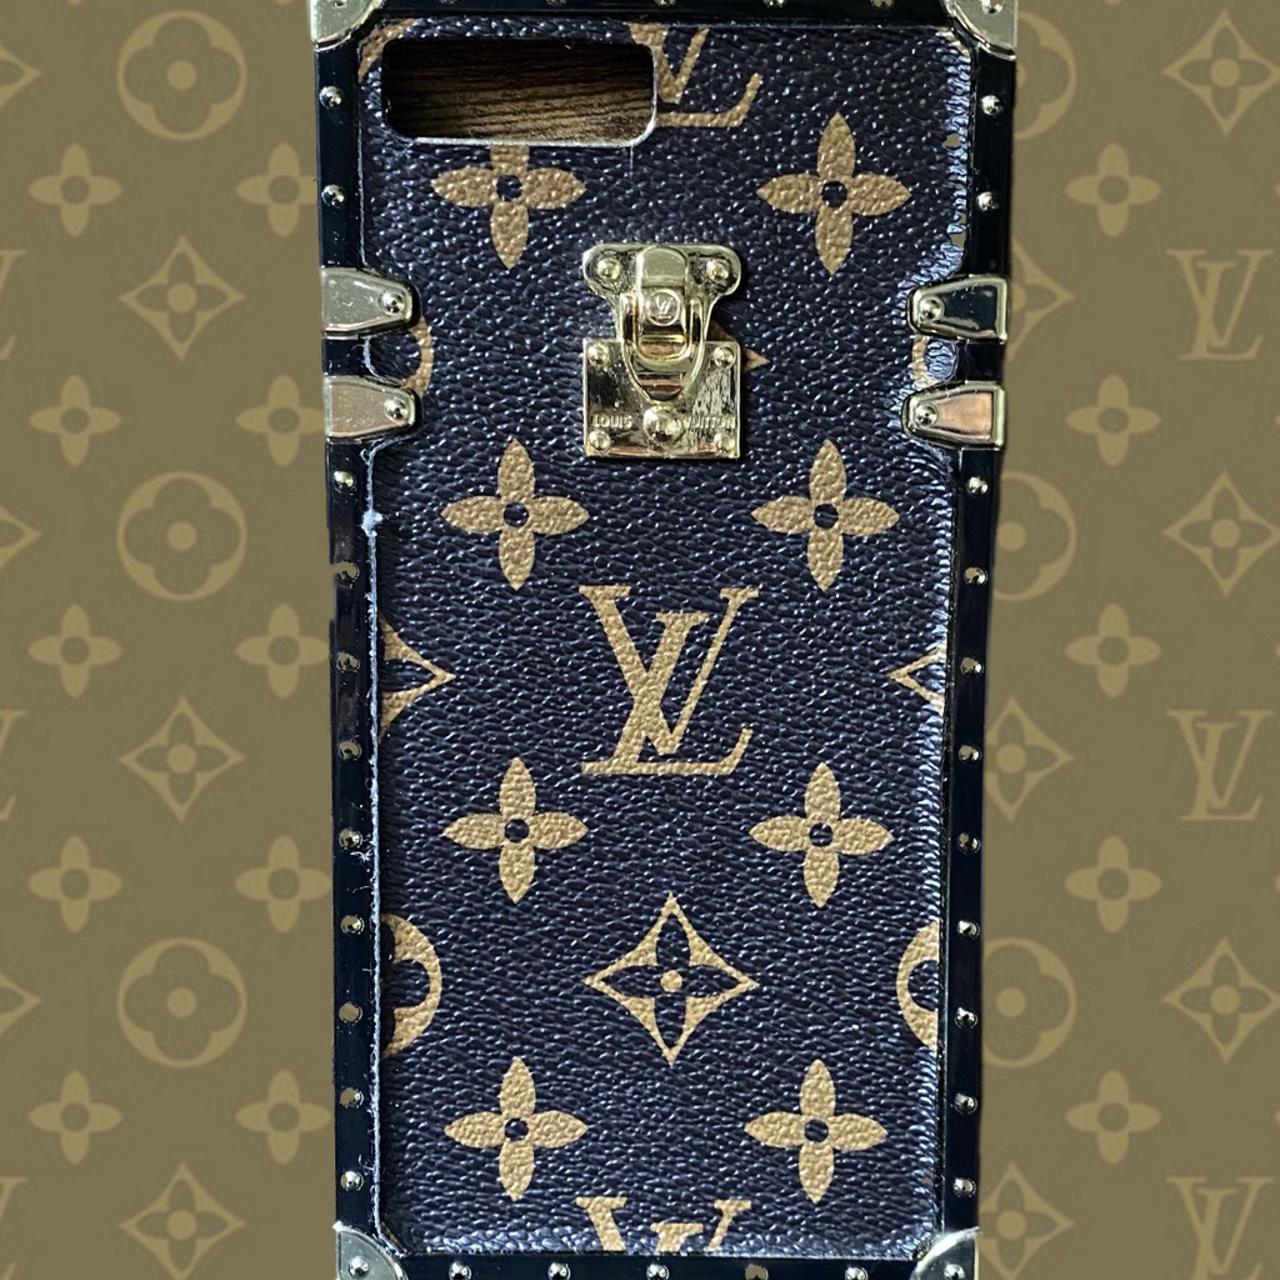 iPhone 8 Plus (Louis Vuitton case)